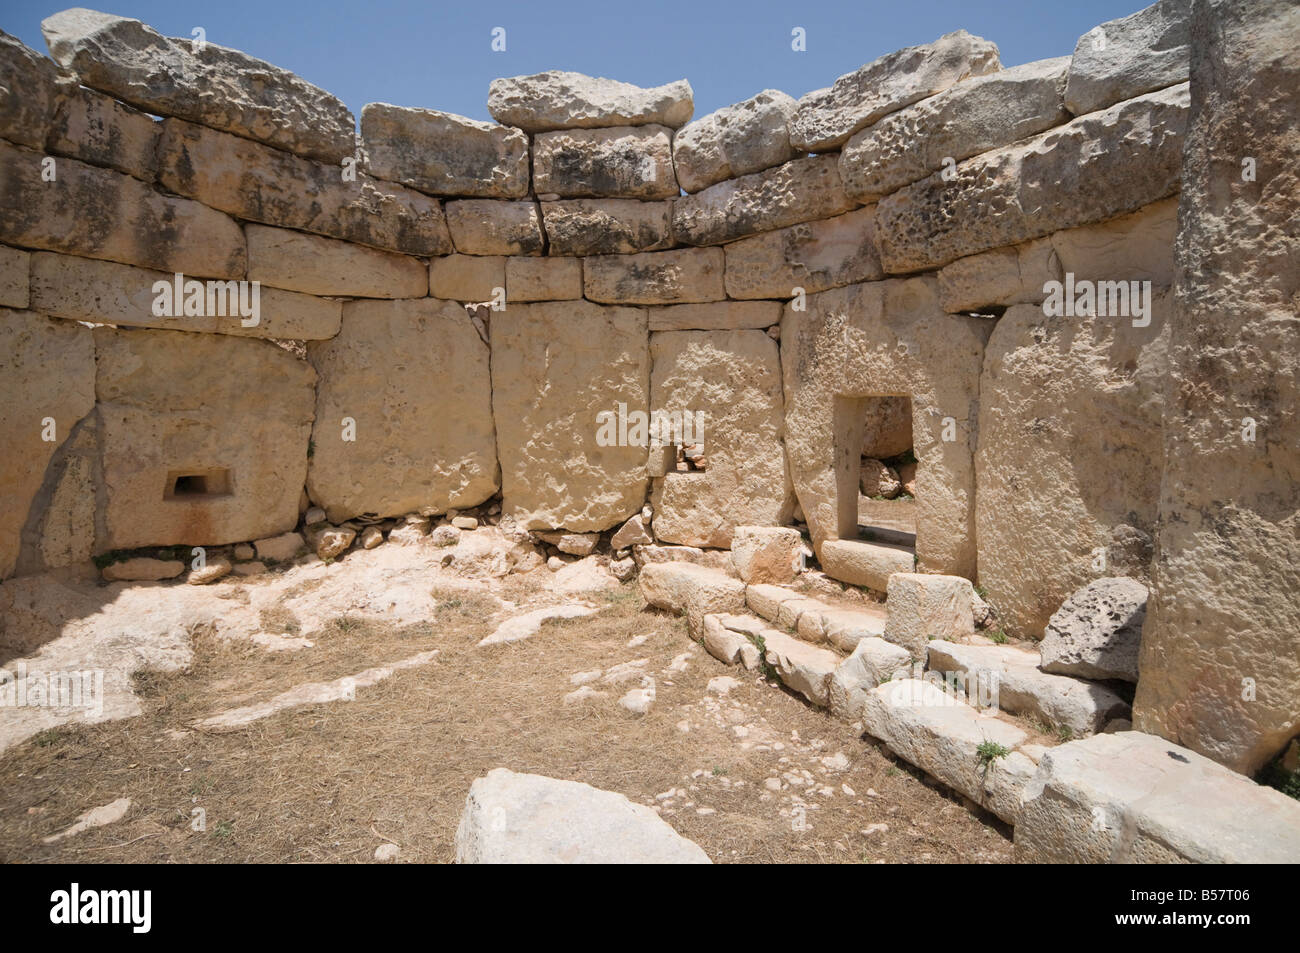 Un temple mégalithique de Mnajdra, construite à la fin du troisième millénaire avant J.-C., UNESCO World Heritage Site, Malta, Europe Banque D'Images